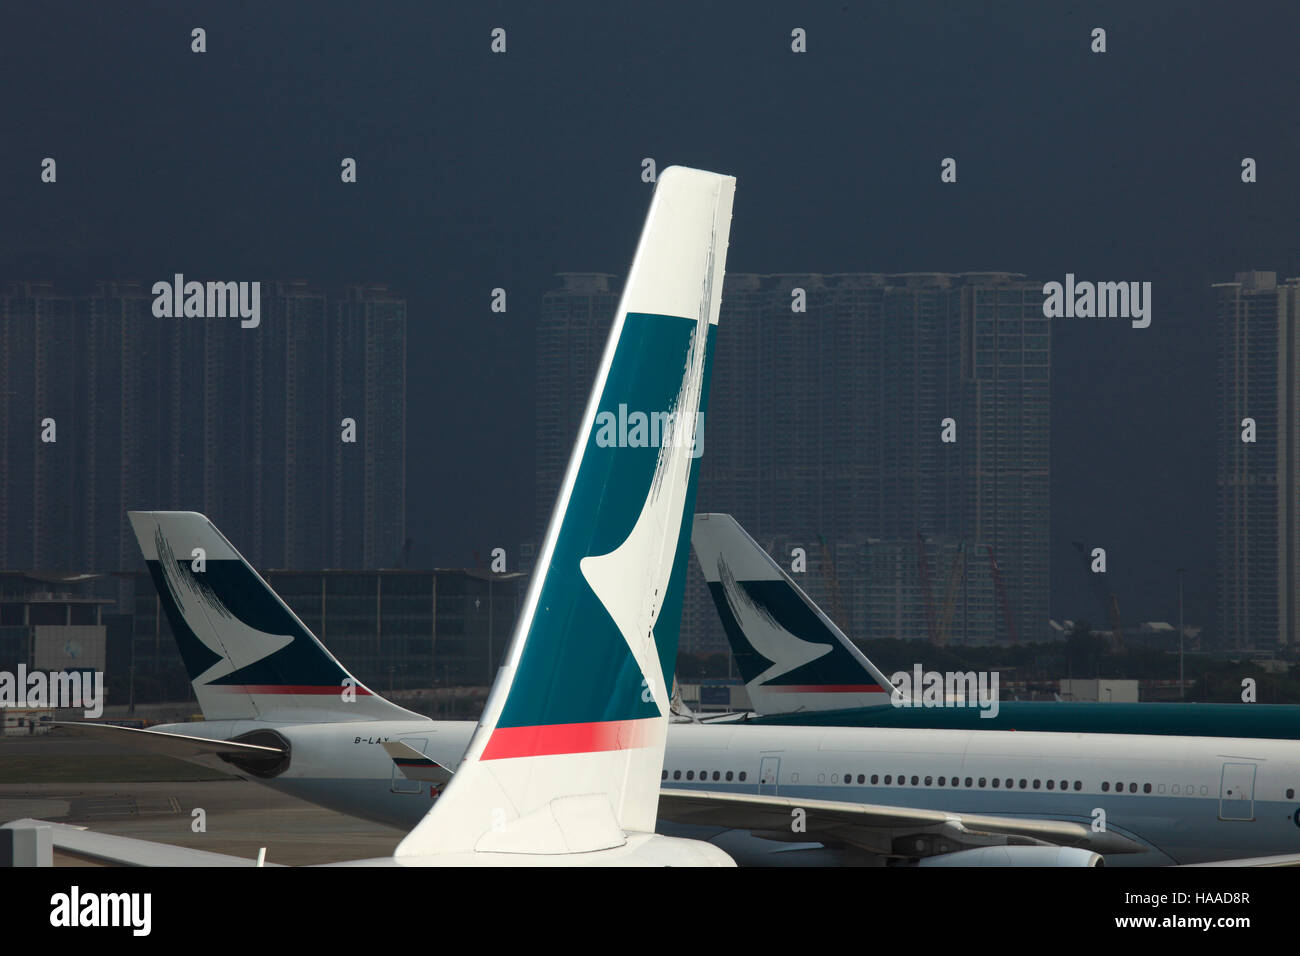 China, Hong Kong, airport, Cathay Pacific airplanes, Stock Photo